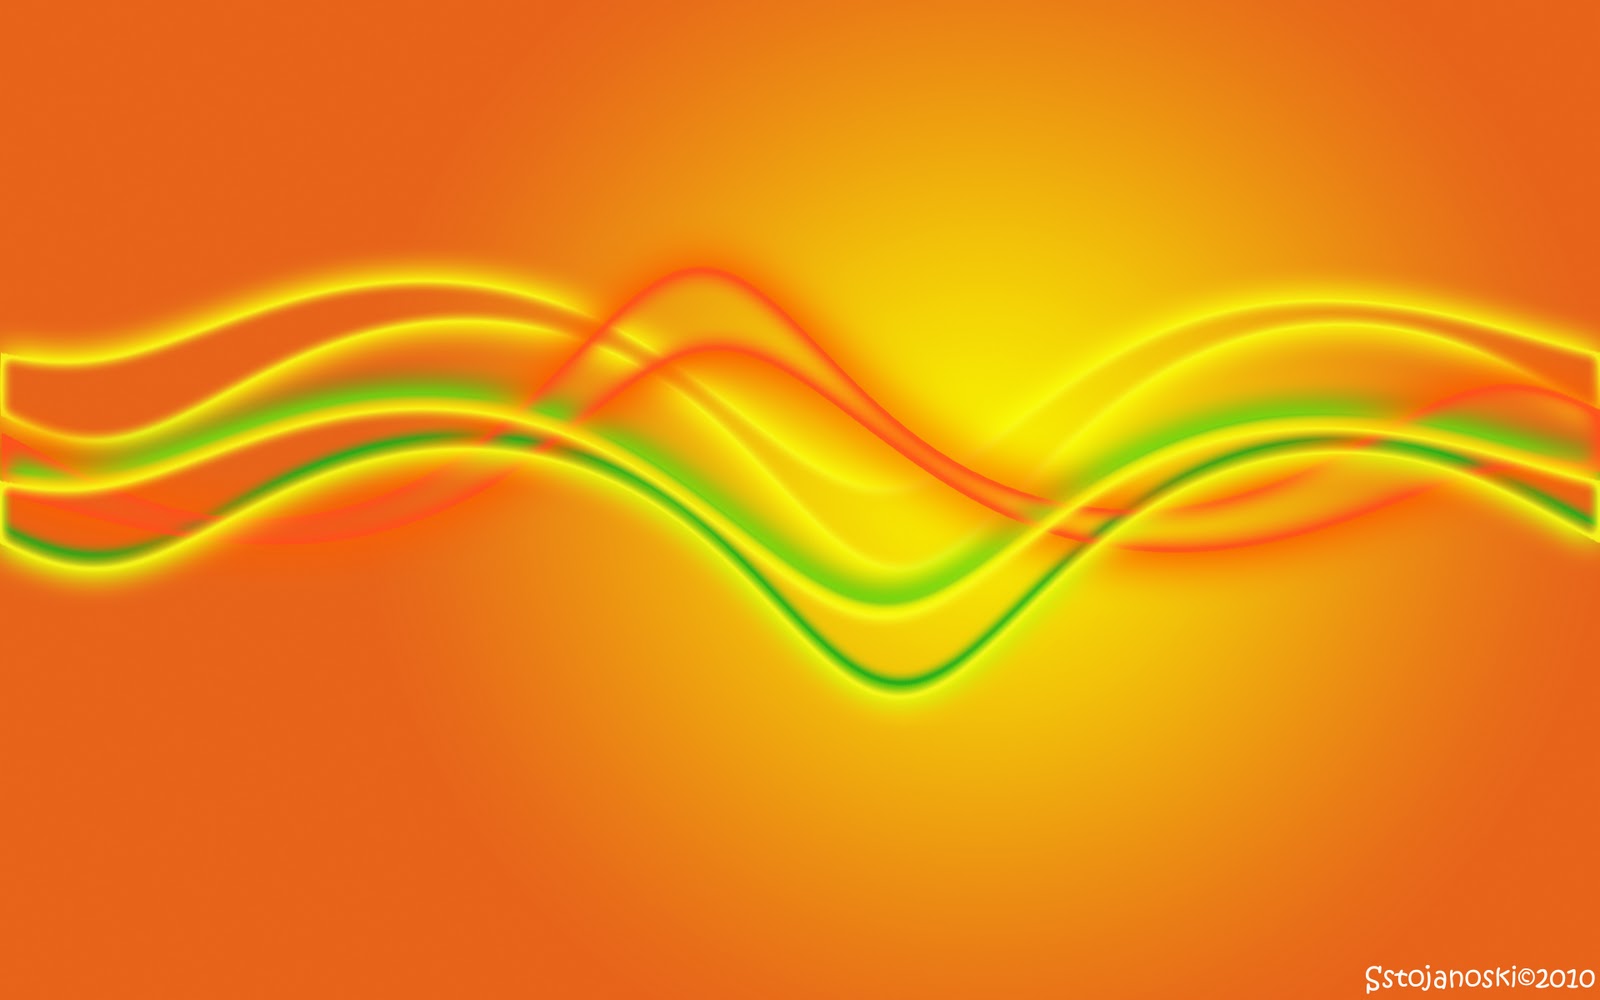 Translucent Waves Widescreen Wallpaper